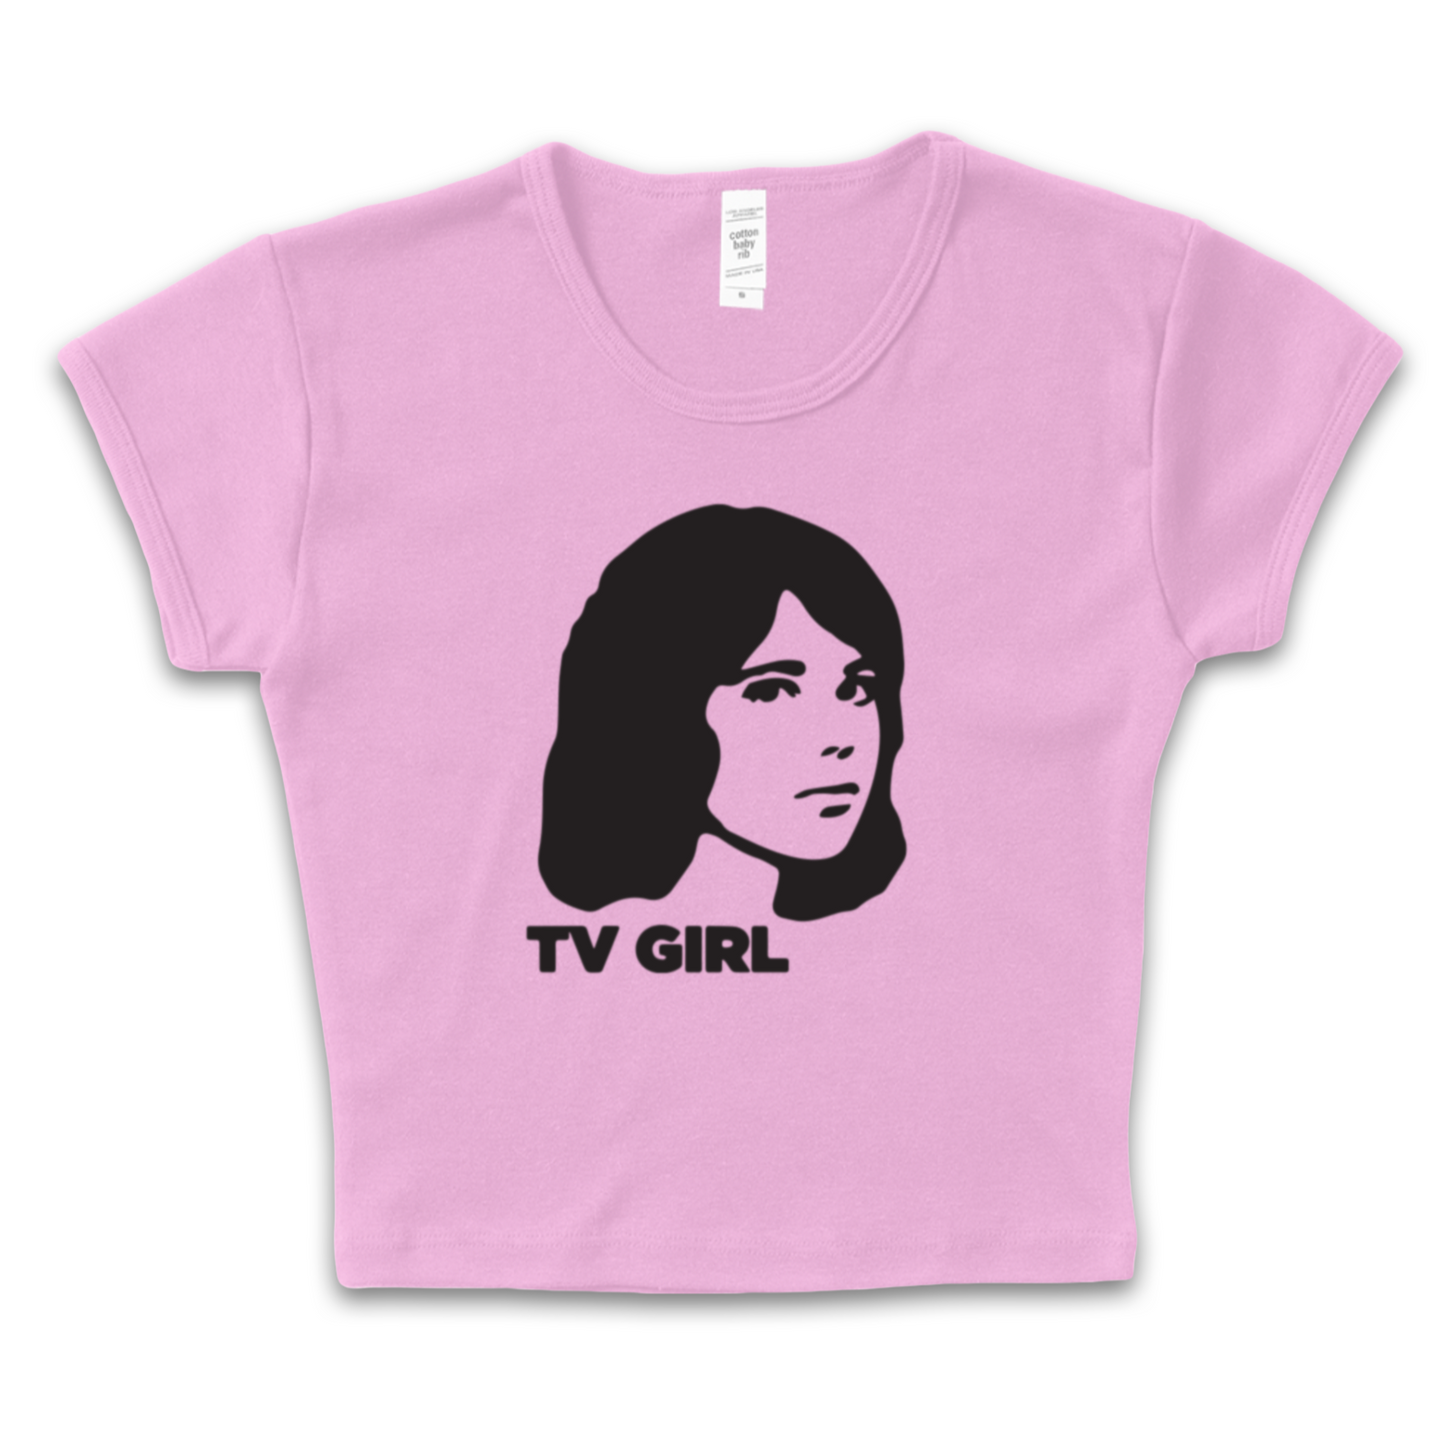 TV Girl Baby Tee